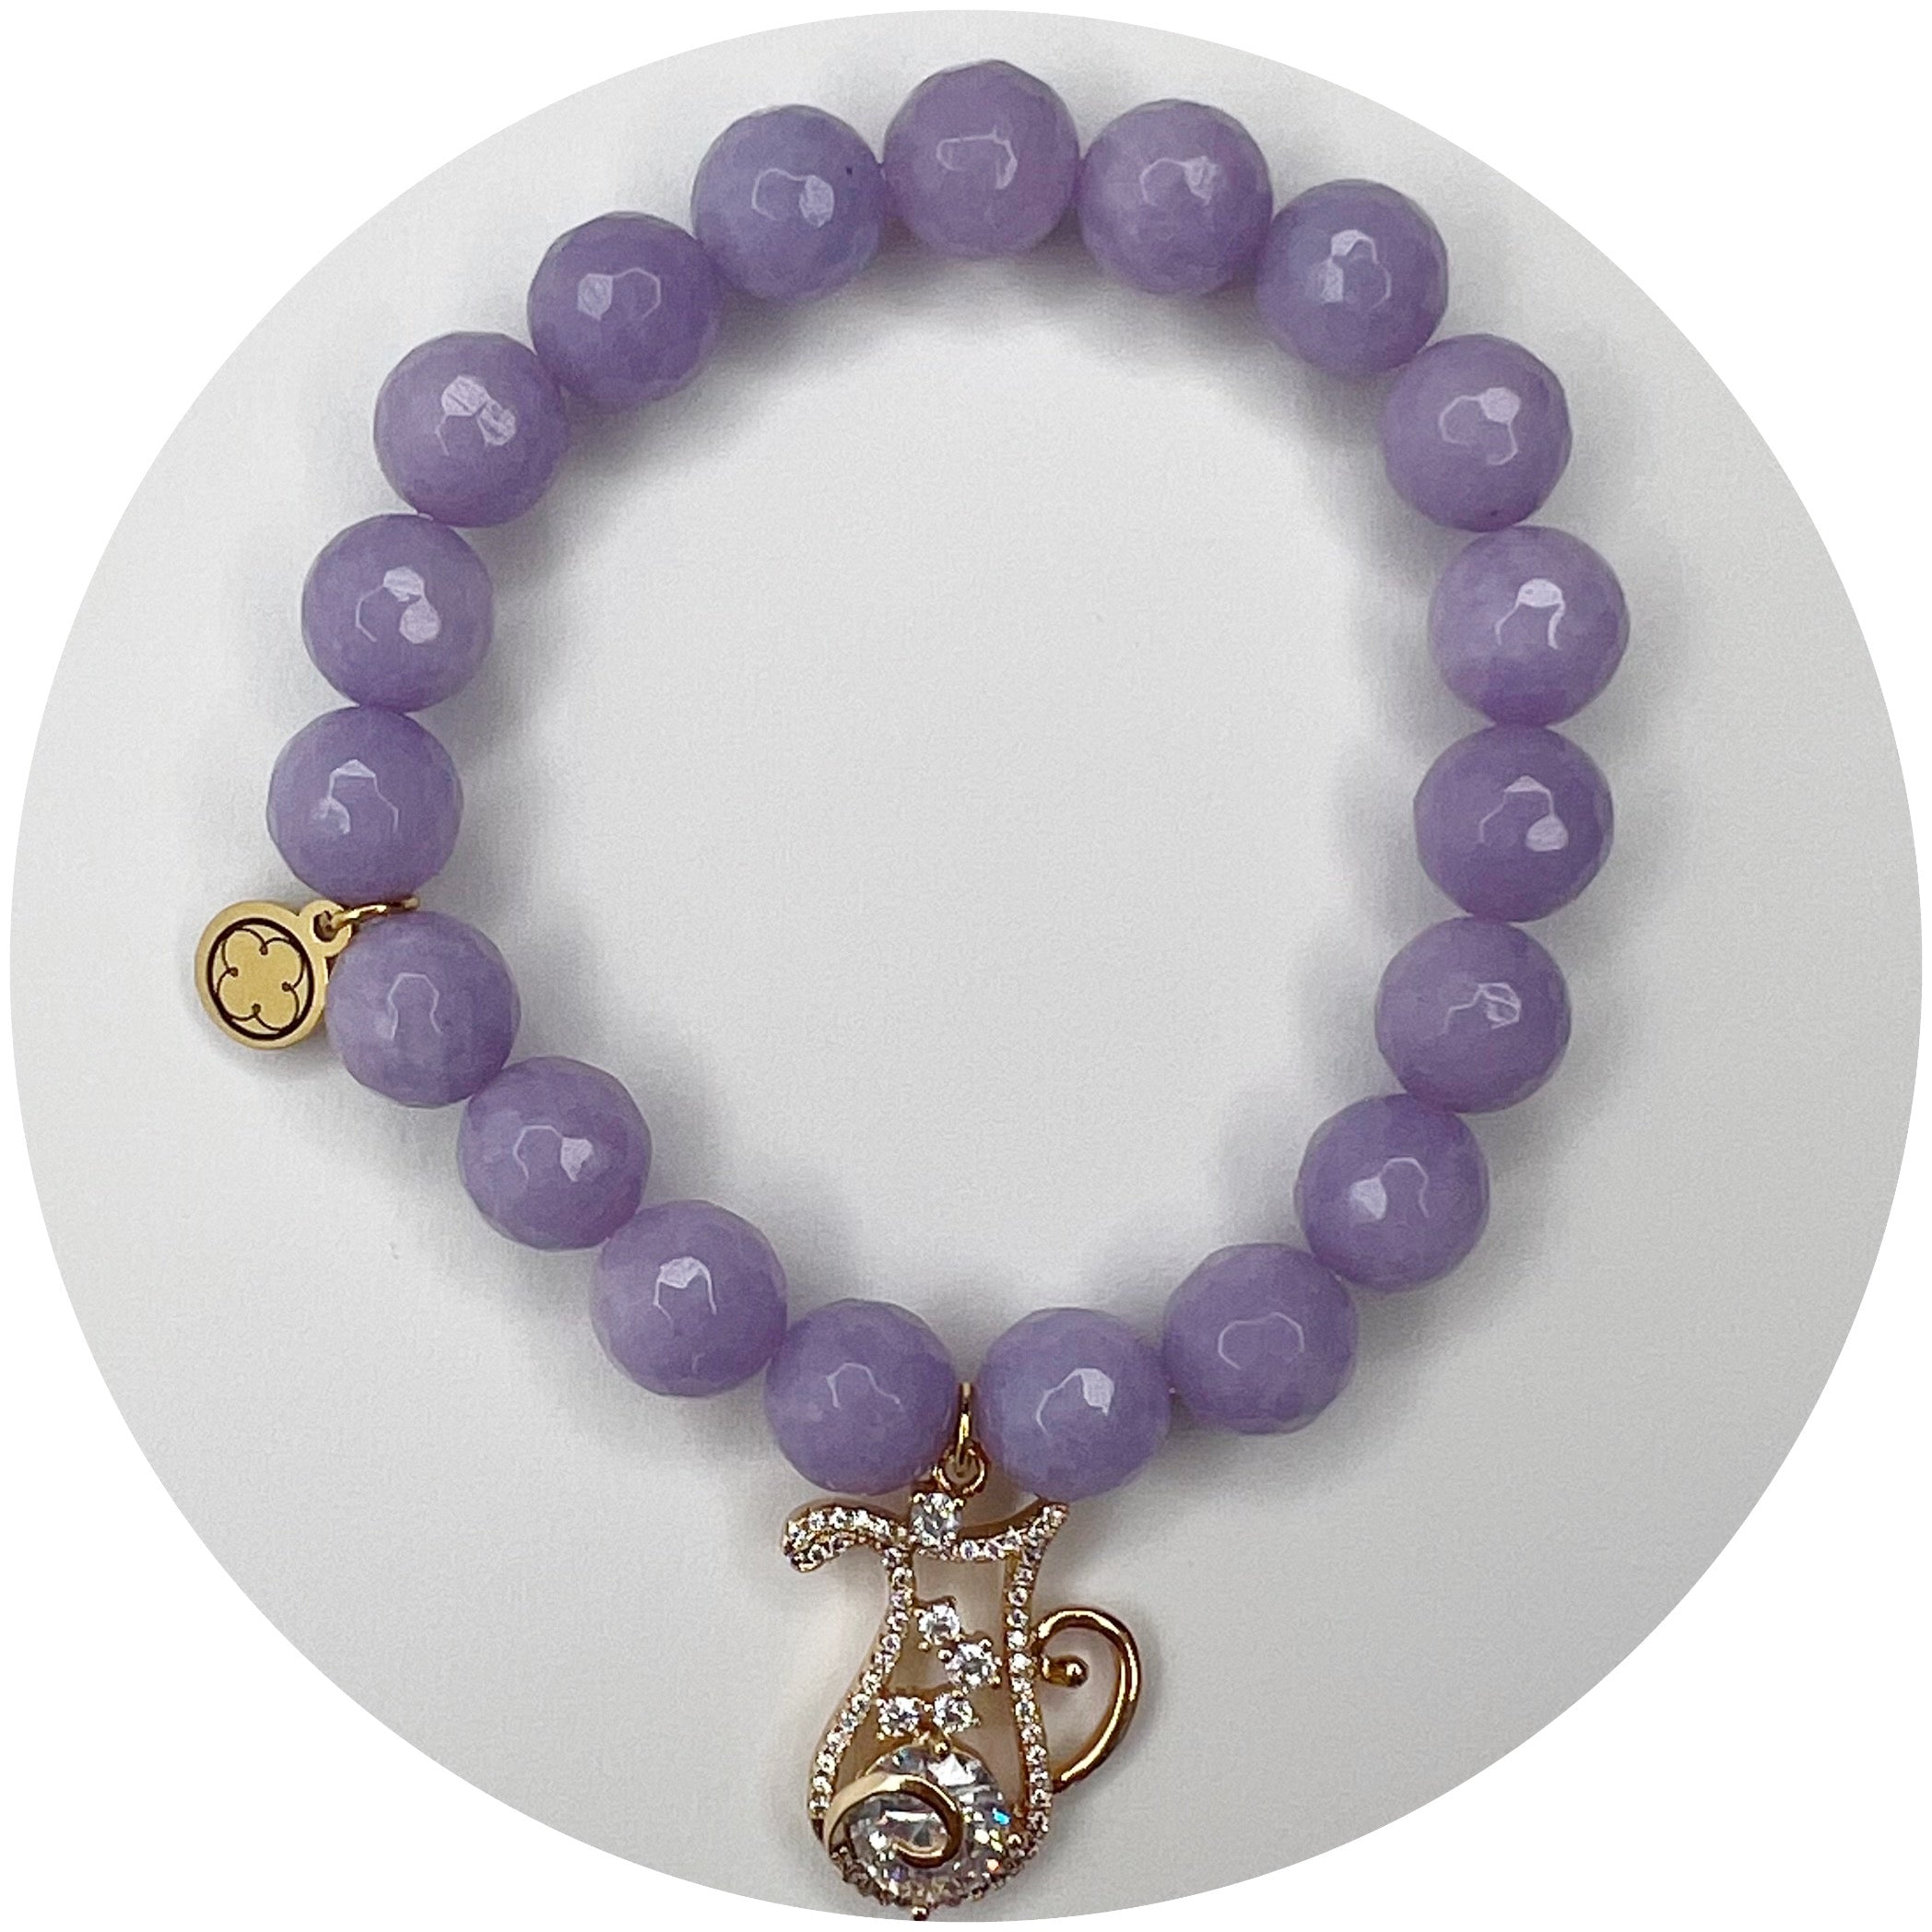 Lavender Jade with Aquarius Zodiac Pendant